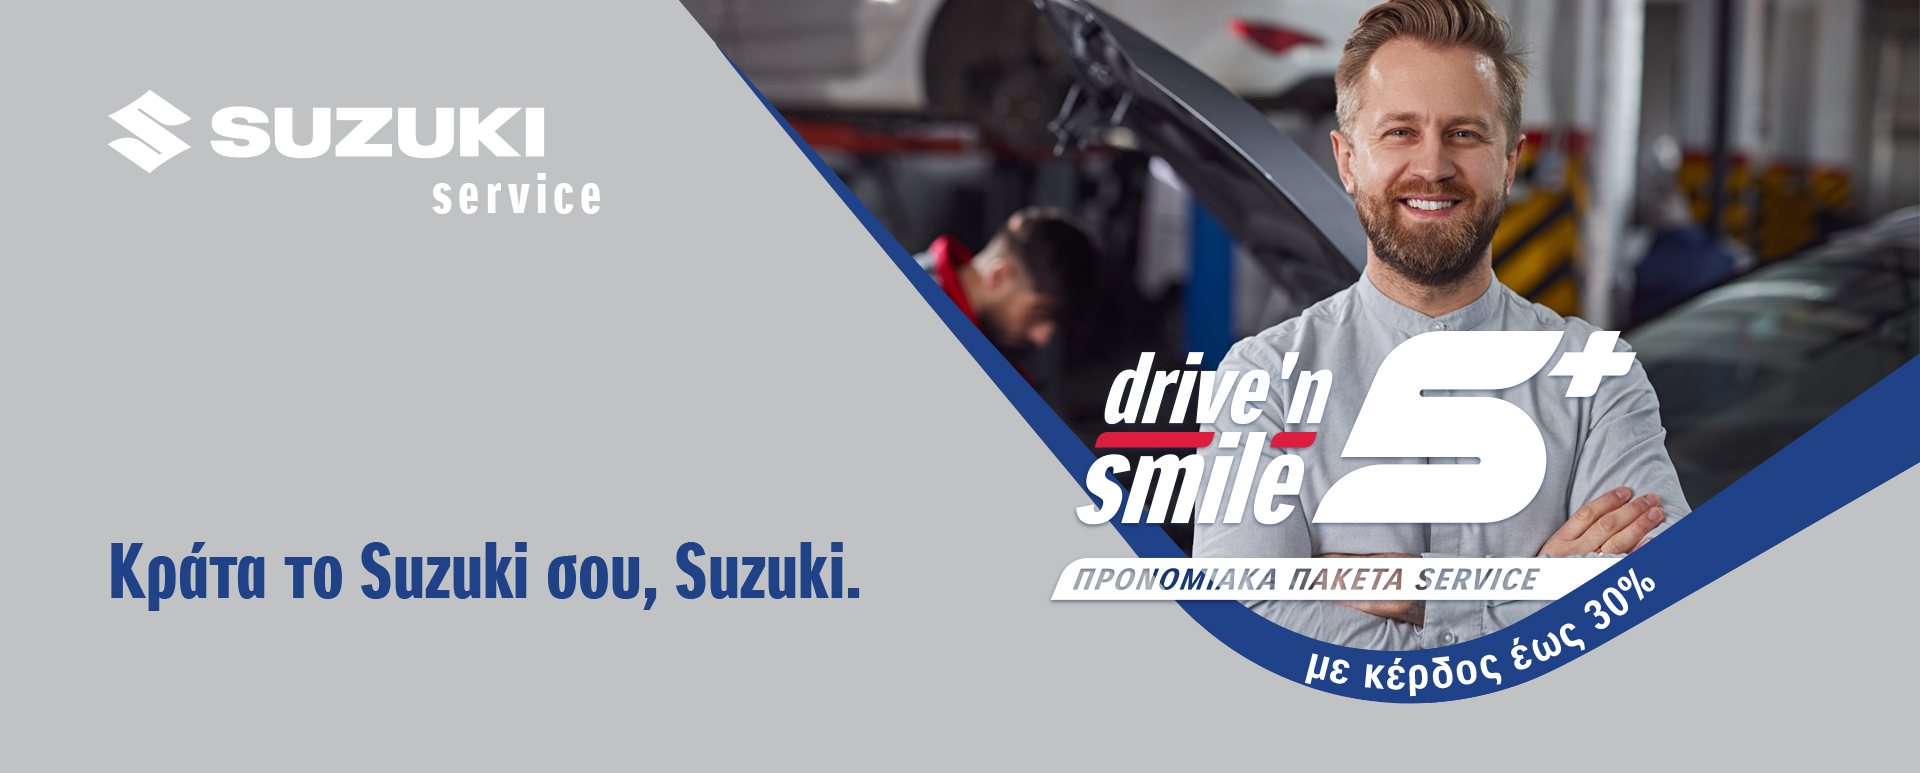 Suzuki Drive N’ Smile 5+